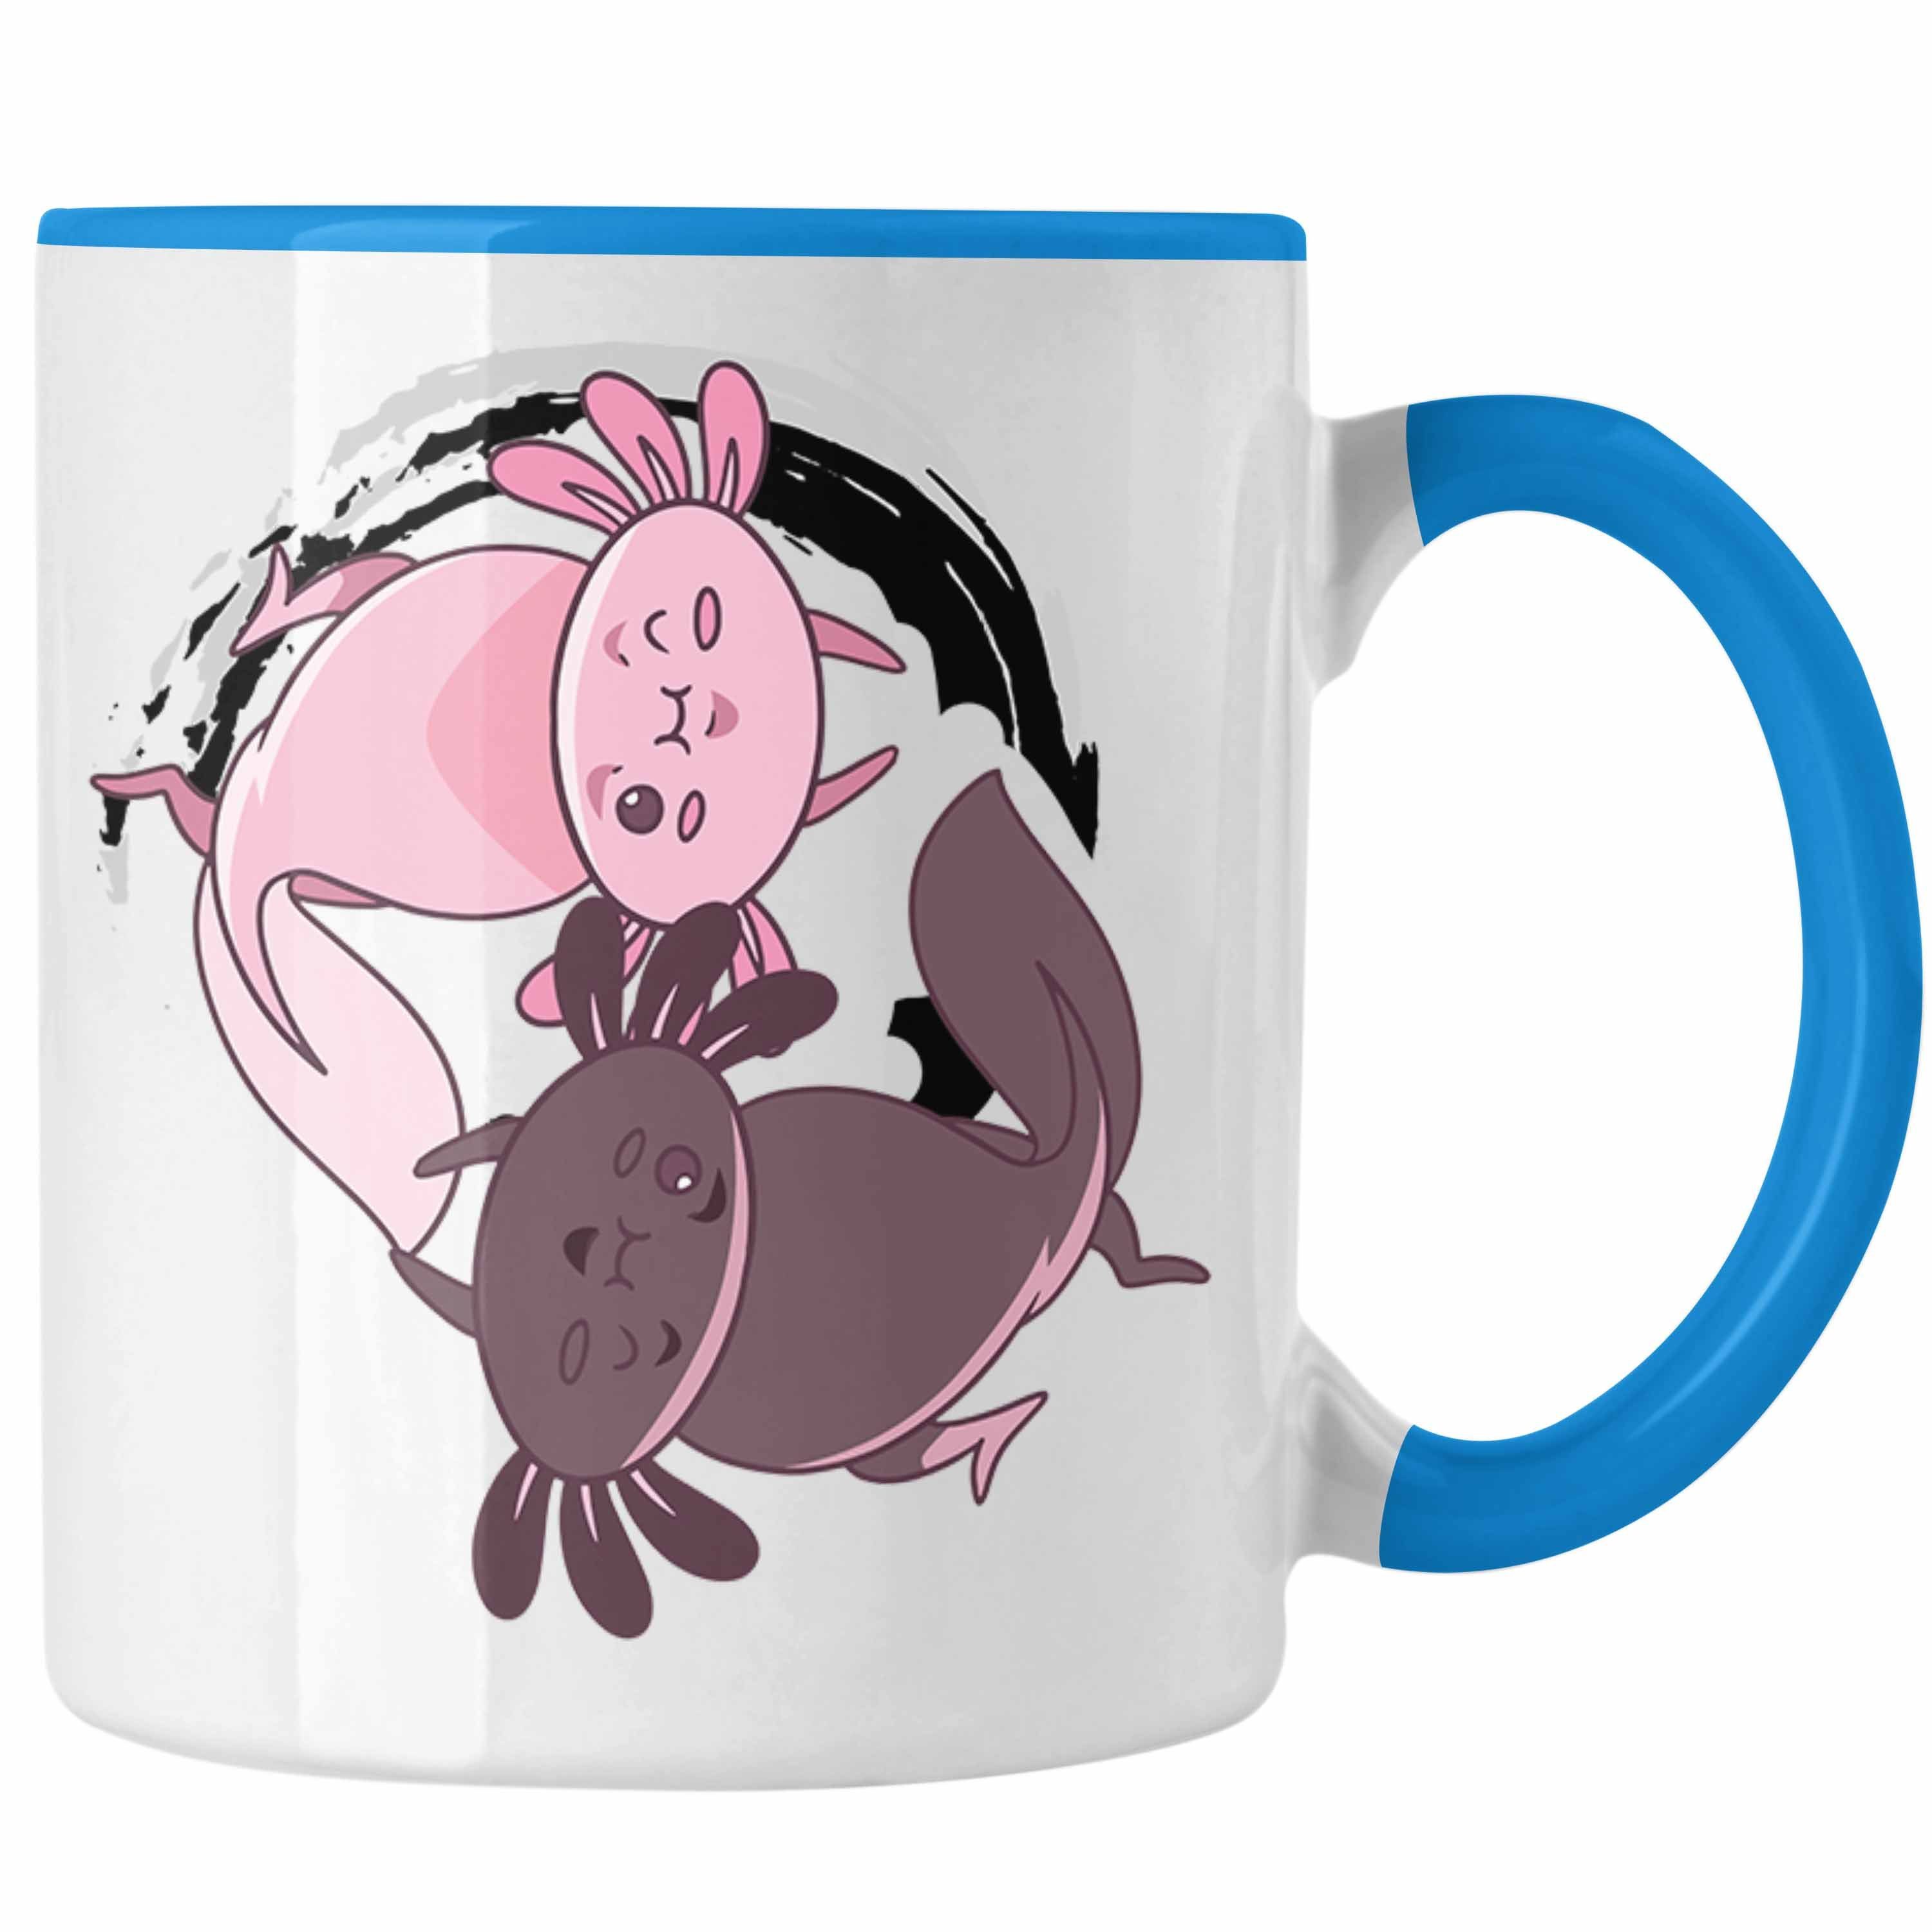 Yang Grafik Trendation Tiere Zeichen Blau - Tasse Tasse Geschenk Schwanzlurch Axolotl Lustig Trendation Geschenkidee Ying